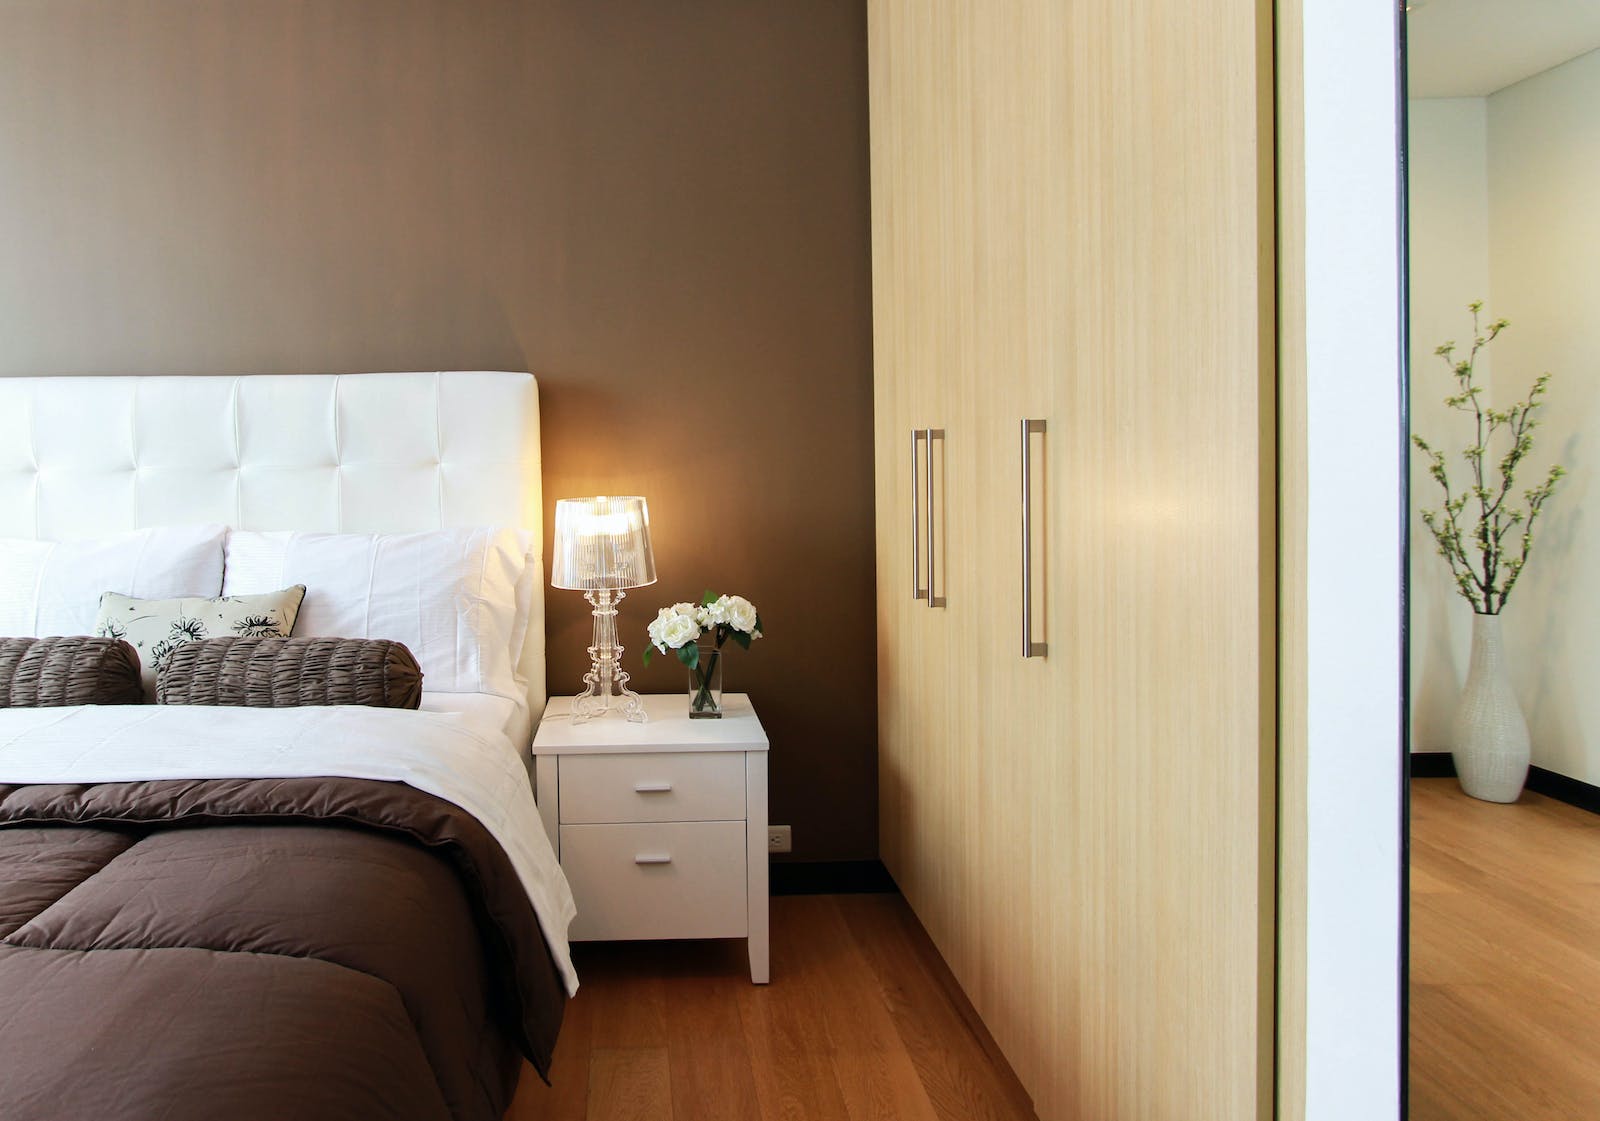 Łóżka tapicerowane - elegancja i komfort w Twojej sypialni